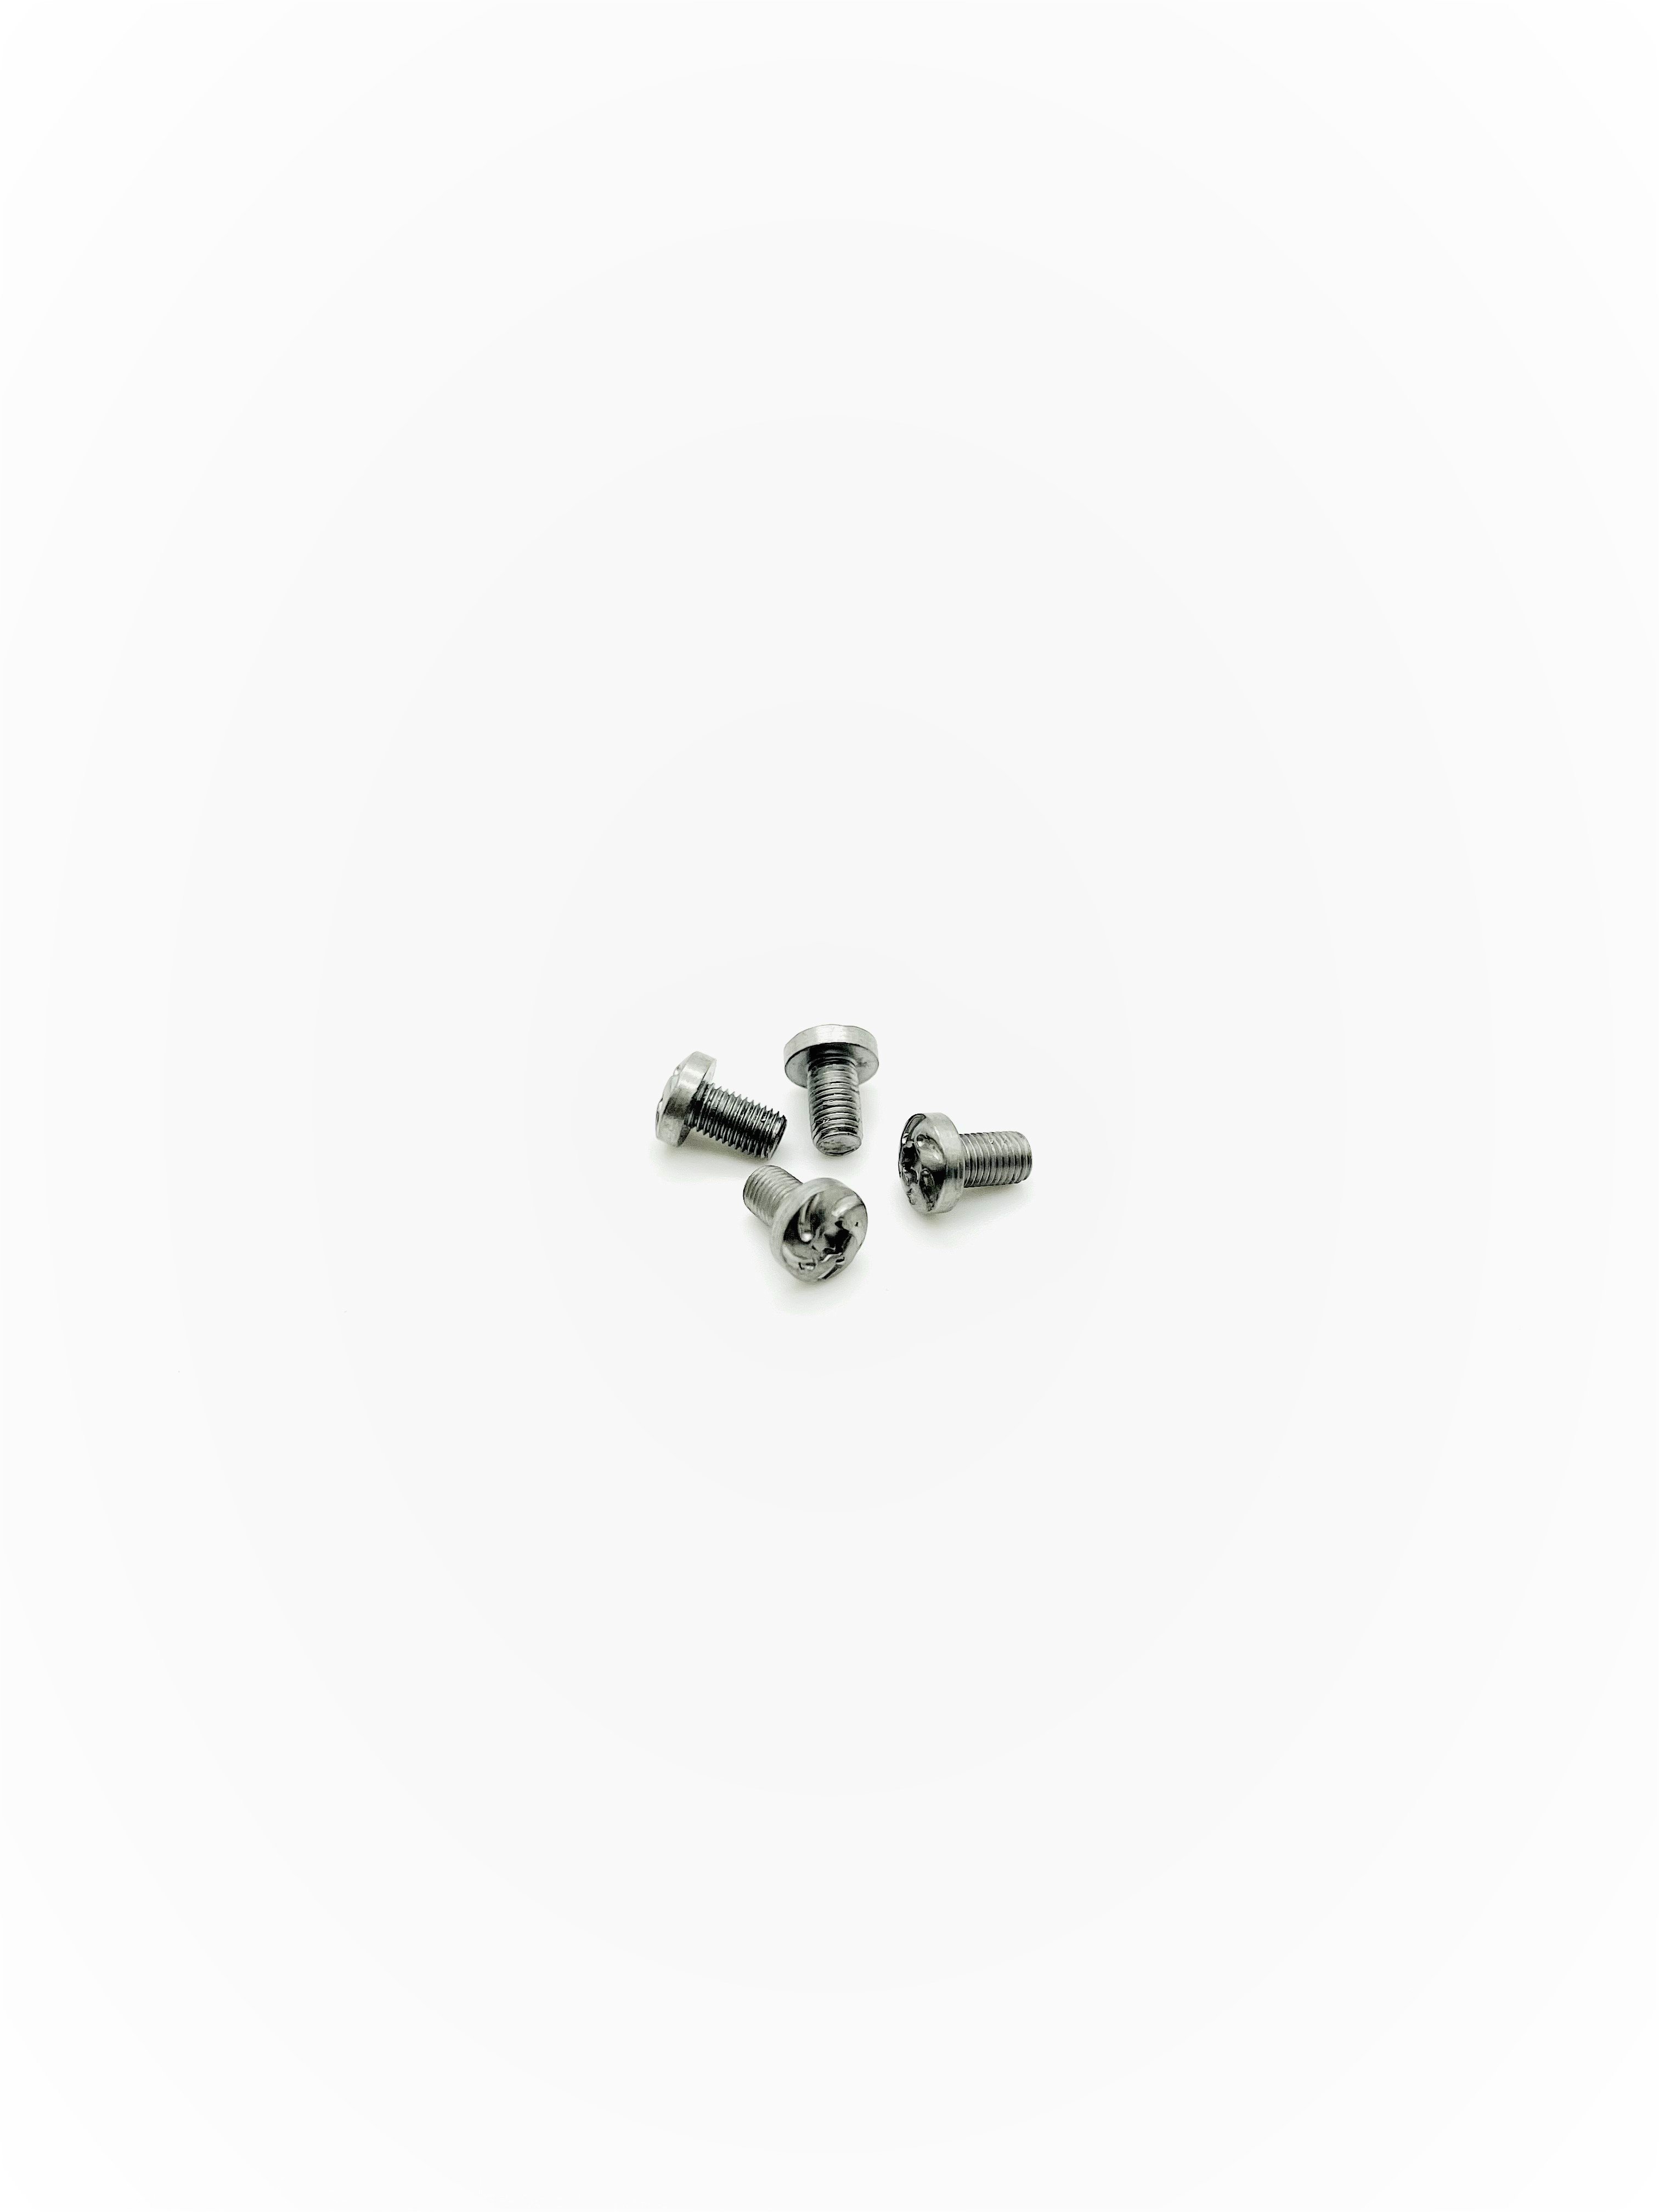 Spiral Torx silver 1911 grip screws x4